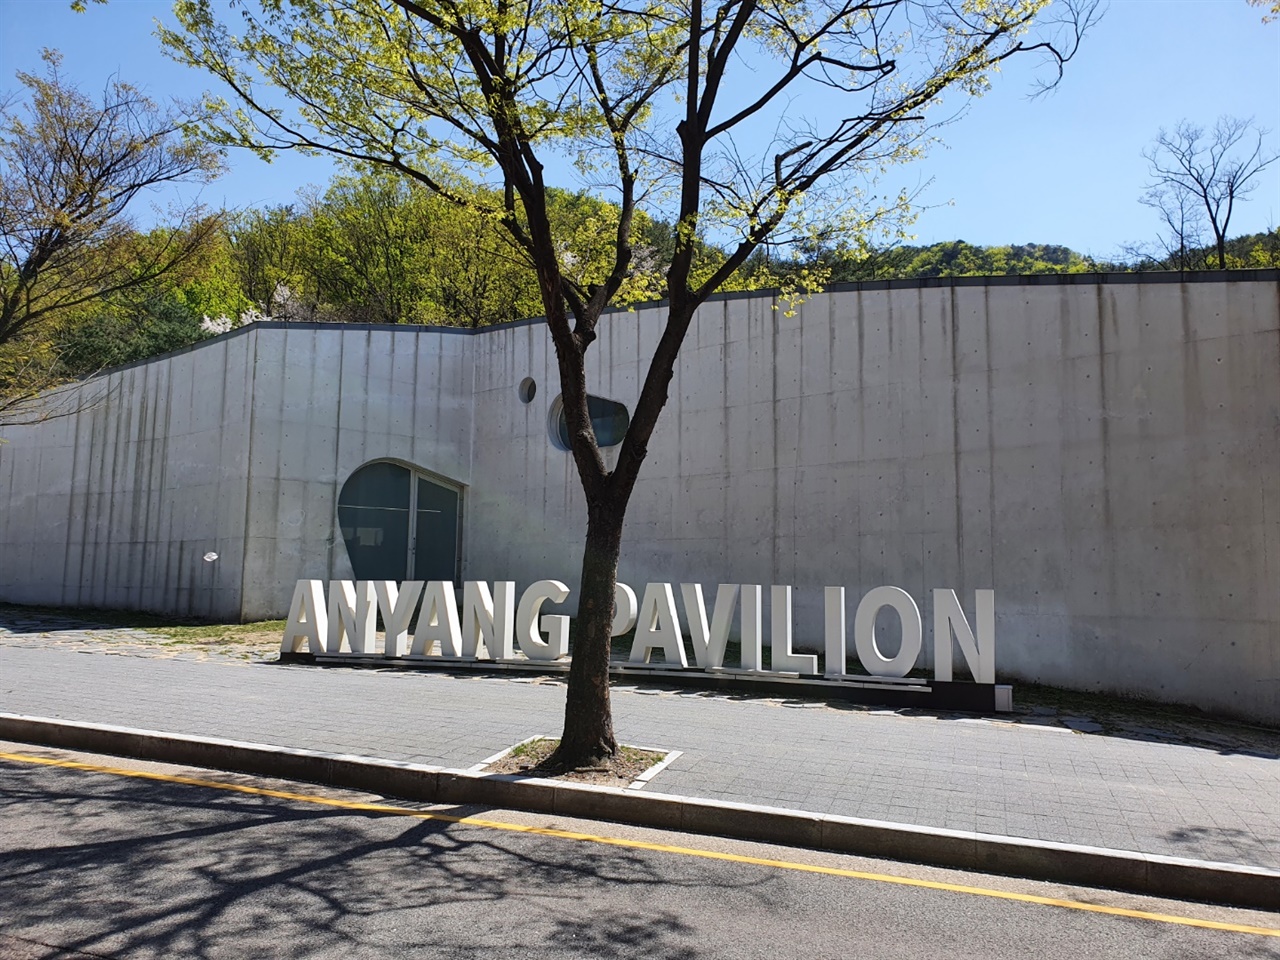 세계적인 건축가 알바로 시자가 건축한 안양파빌리온은 예술공원에 관한 종합정보를 얻을 수 있는 장소다.